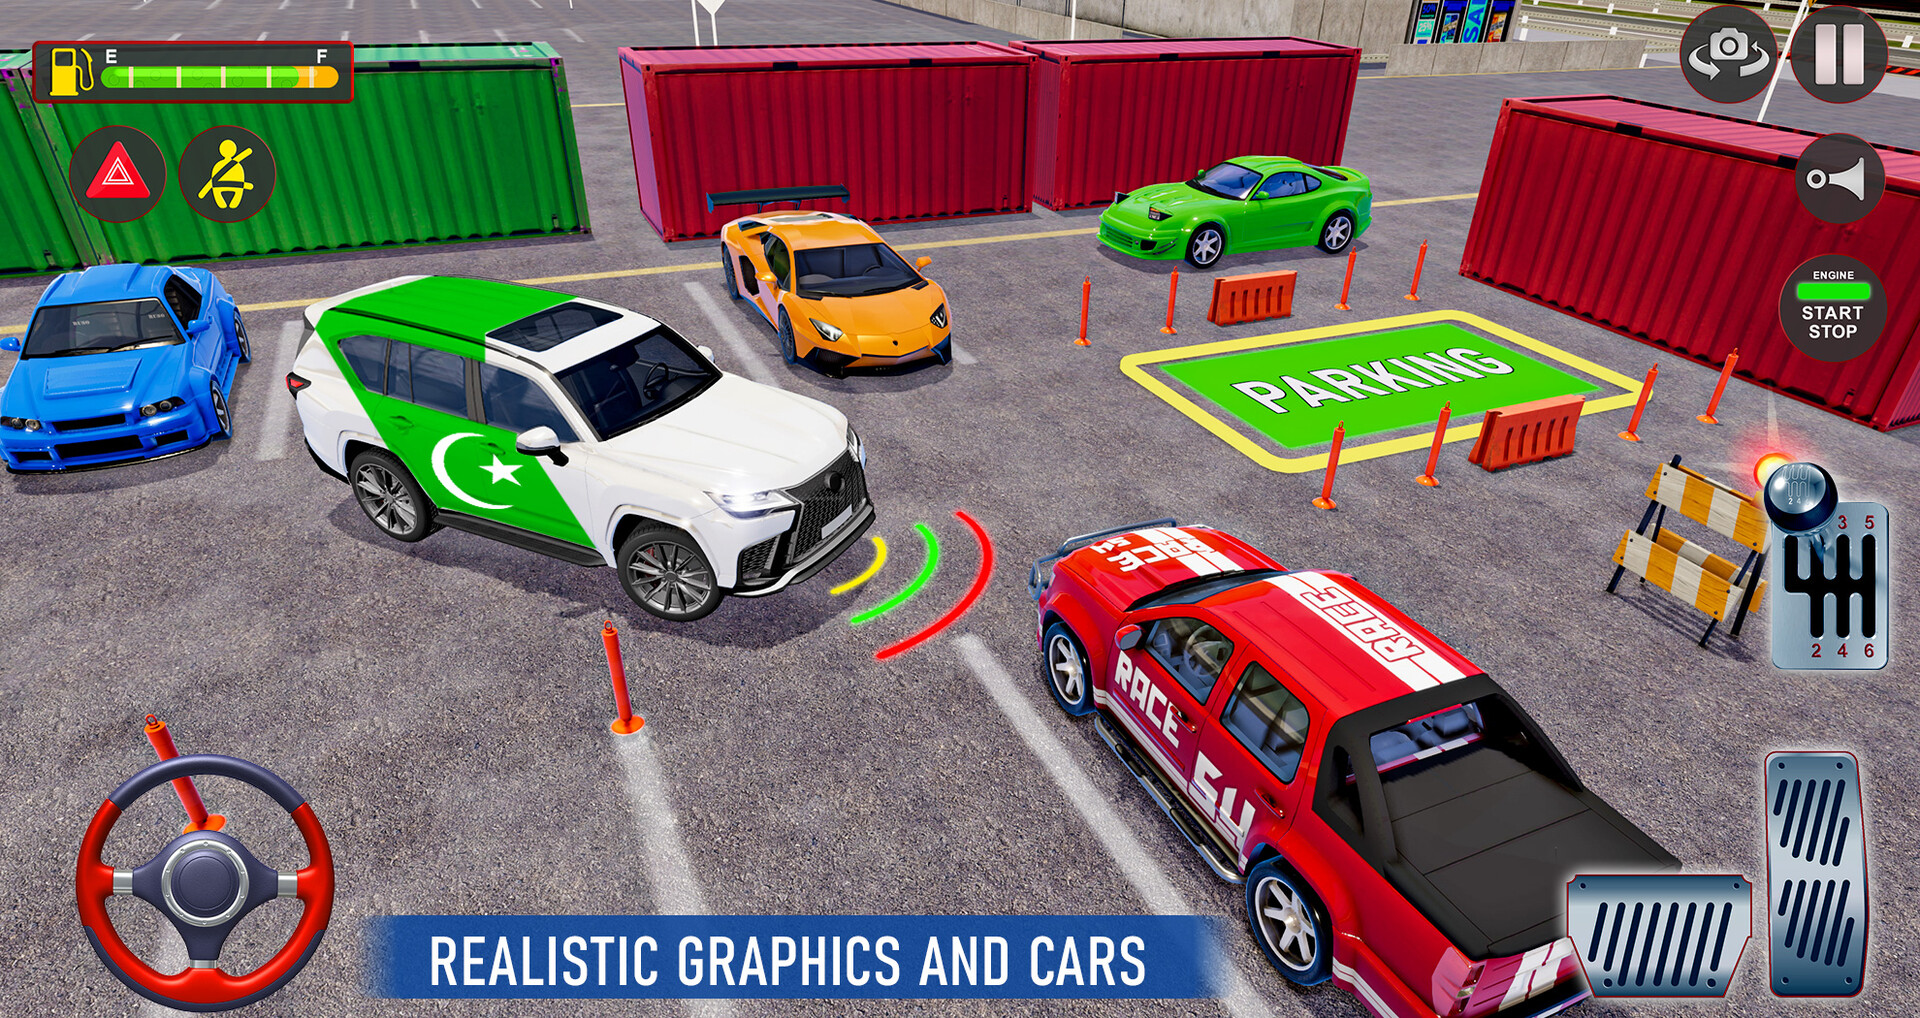 Prado Car Games Modern Car Parking Car Games 2020 #1 - Android